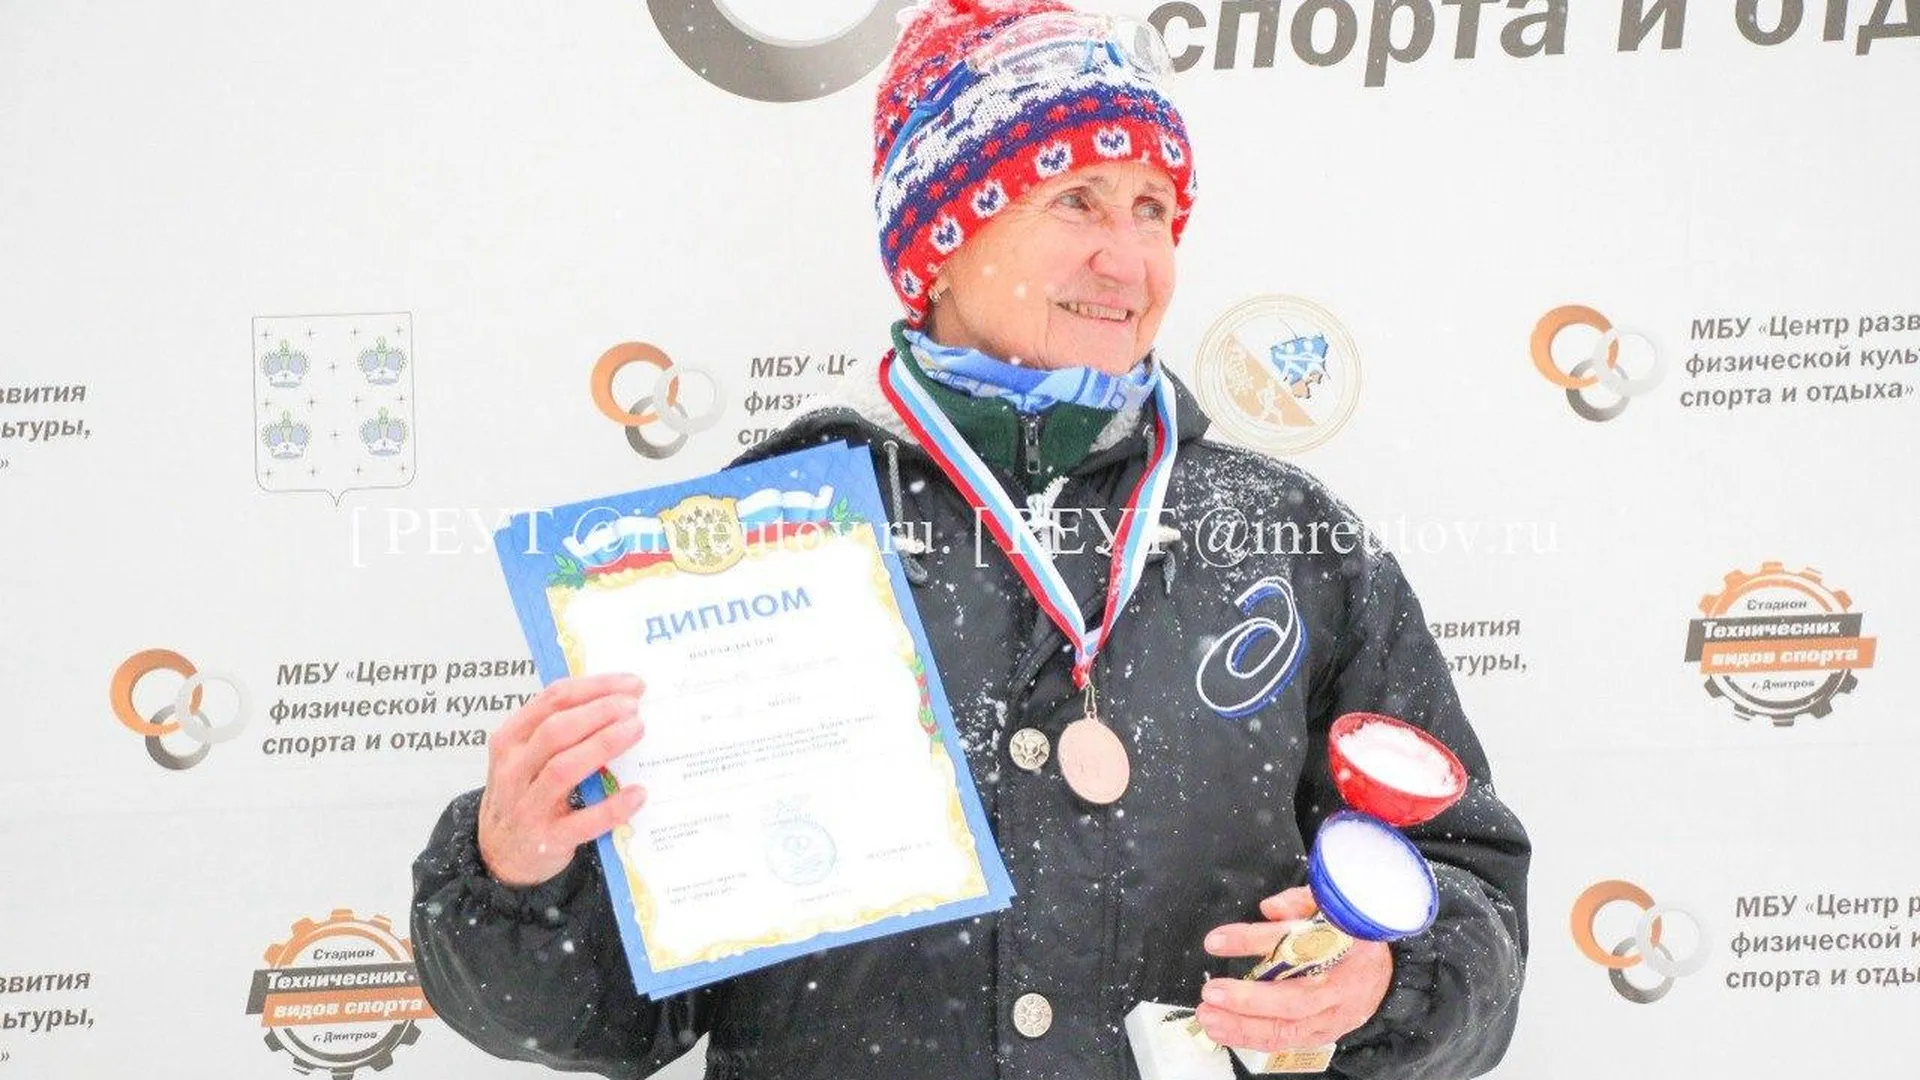 Диплом «самой юной участницы» легкоатлетического забега вручили 79-летней Людмиле Колобановой из Реутова